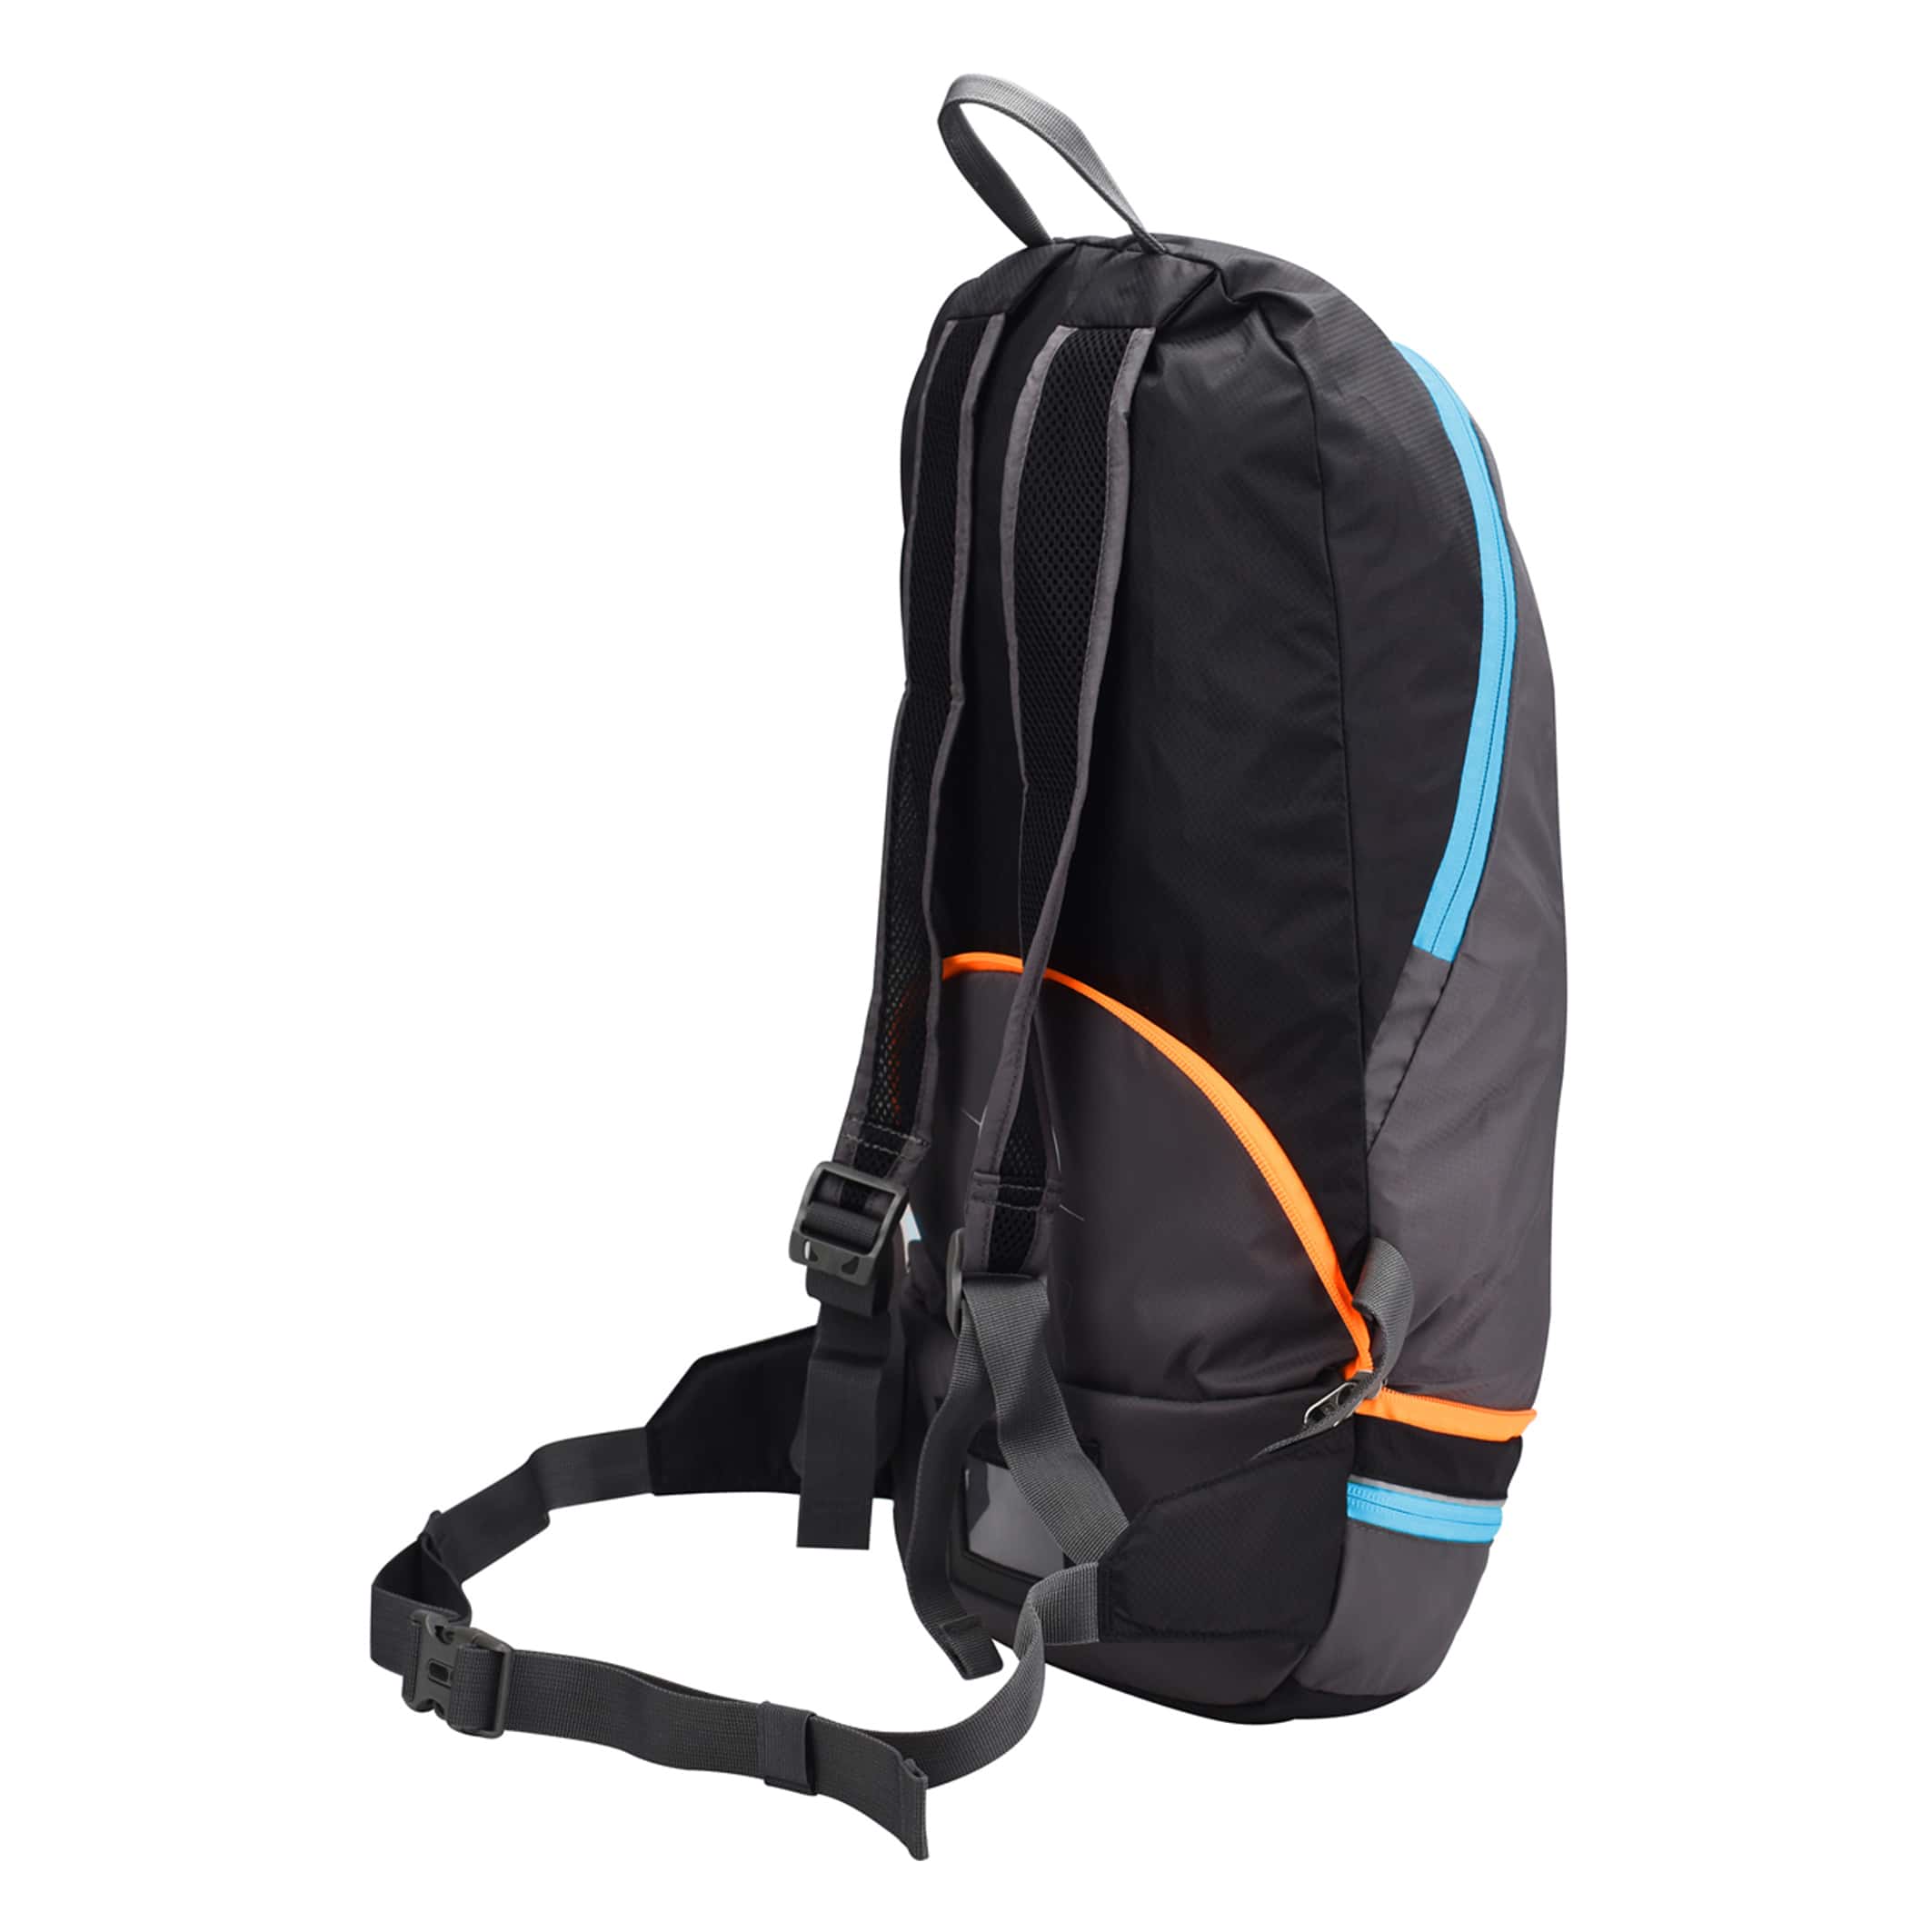 MB550-03-Backpack-2-in-1-Rock-Blue-Orange-Side